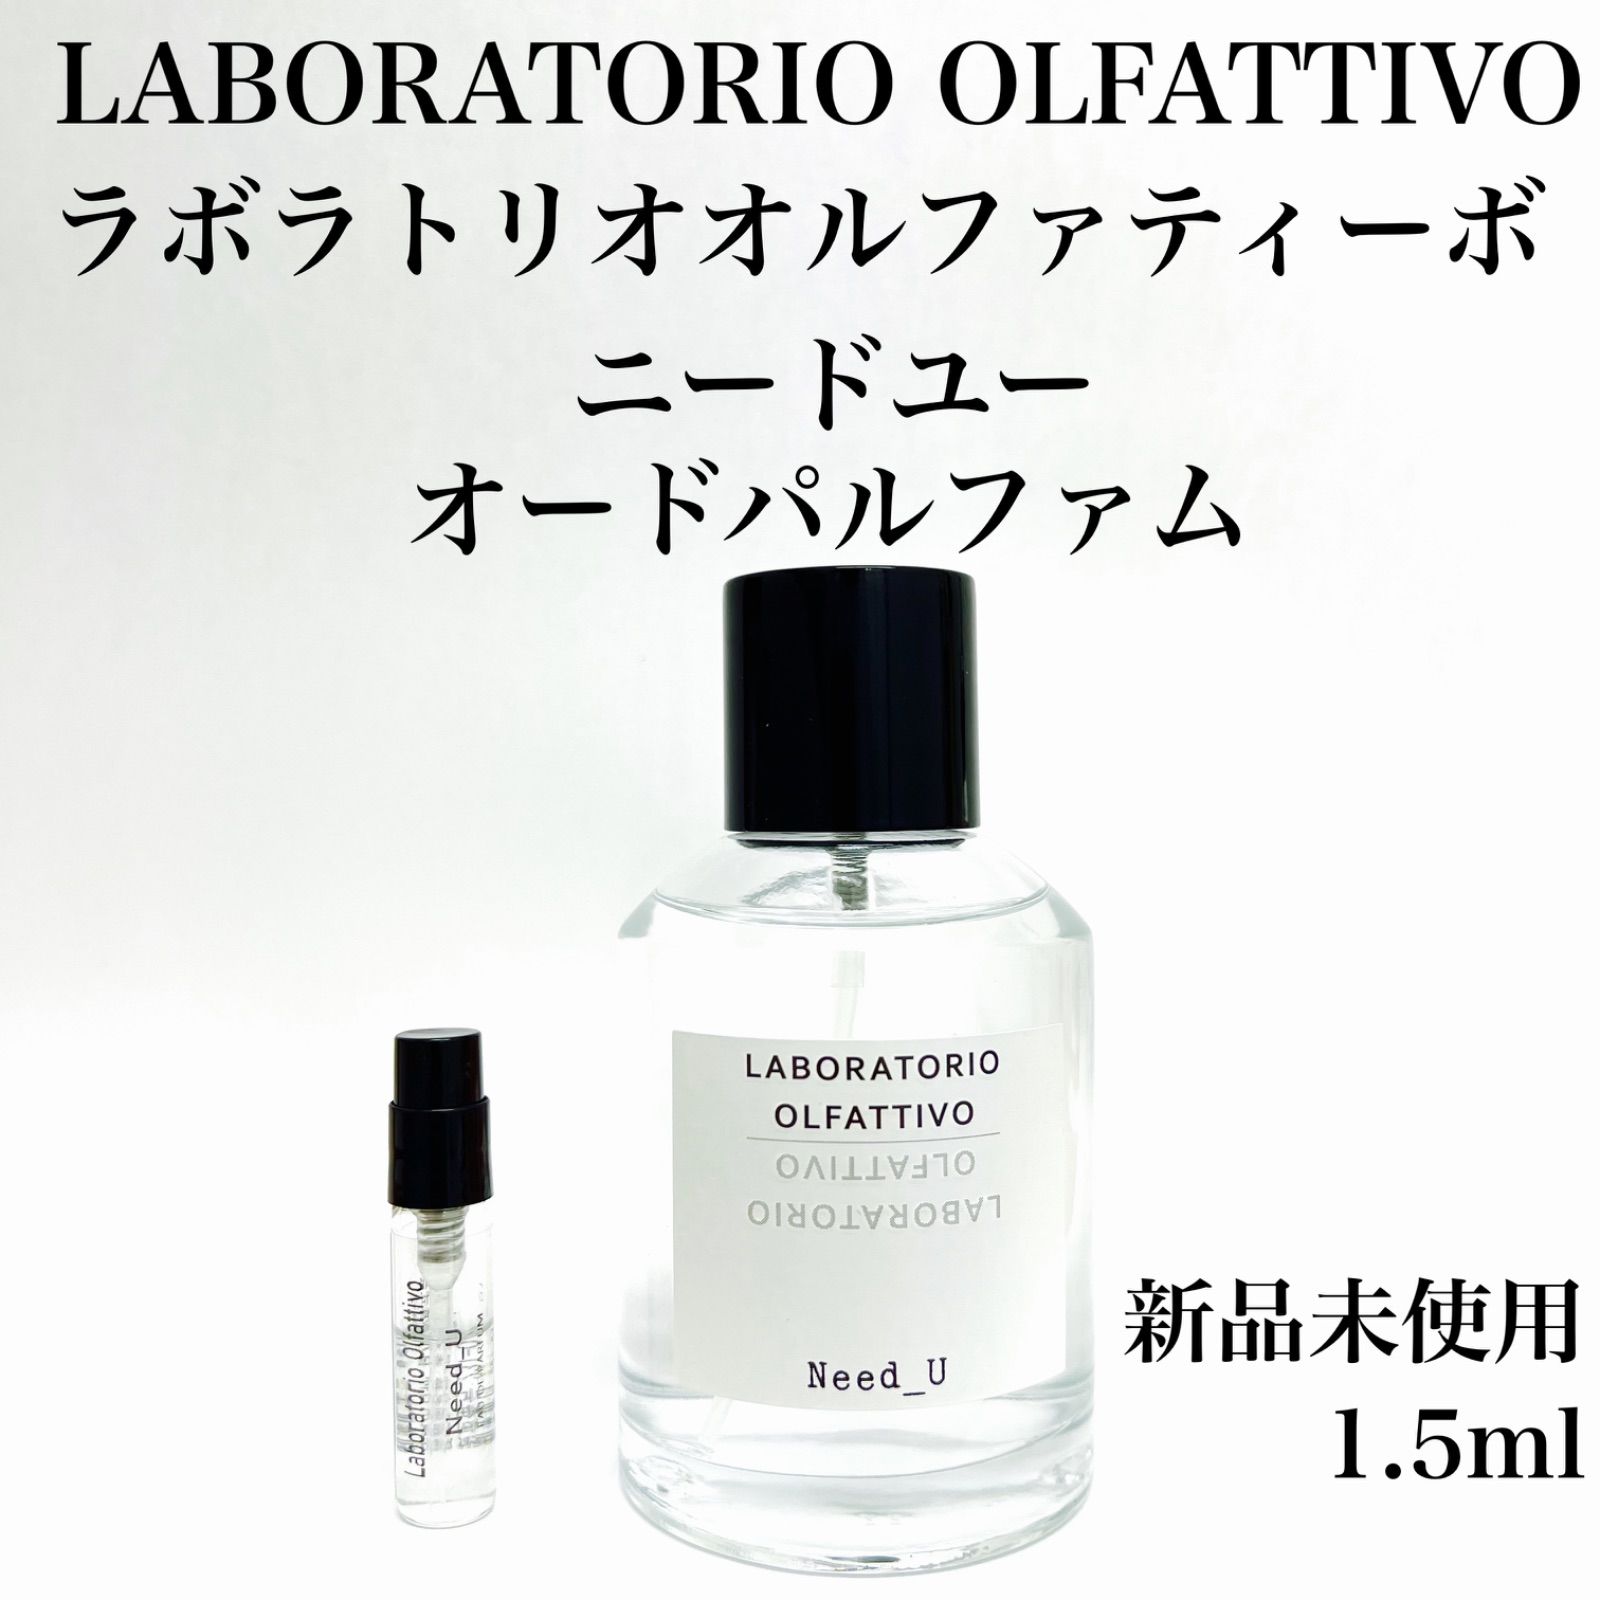 ラボラトリオオルファティーボ ニードユー 香水香水 - www